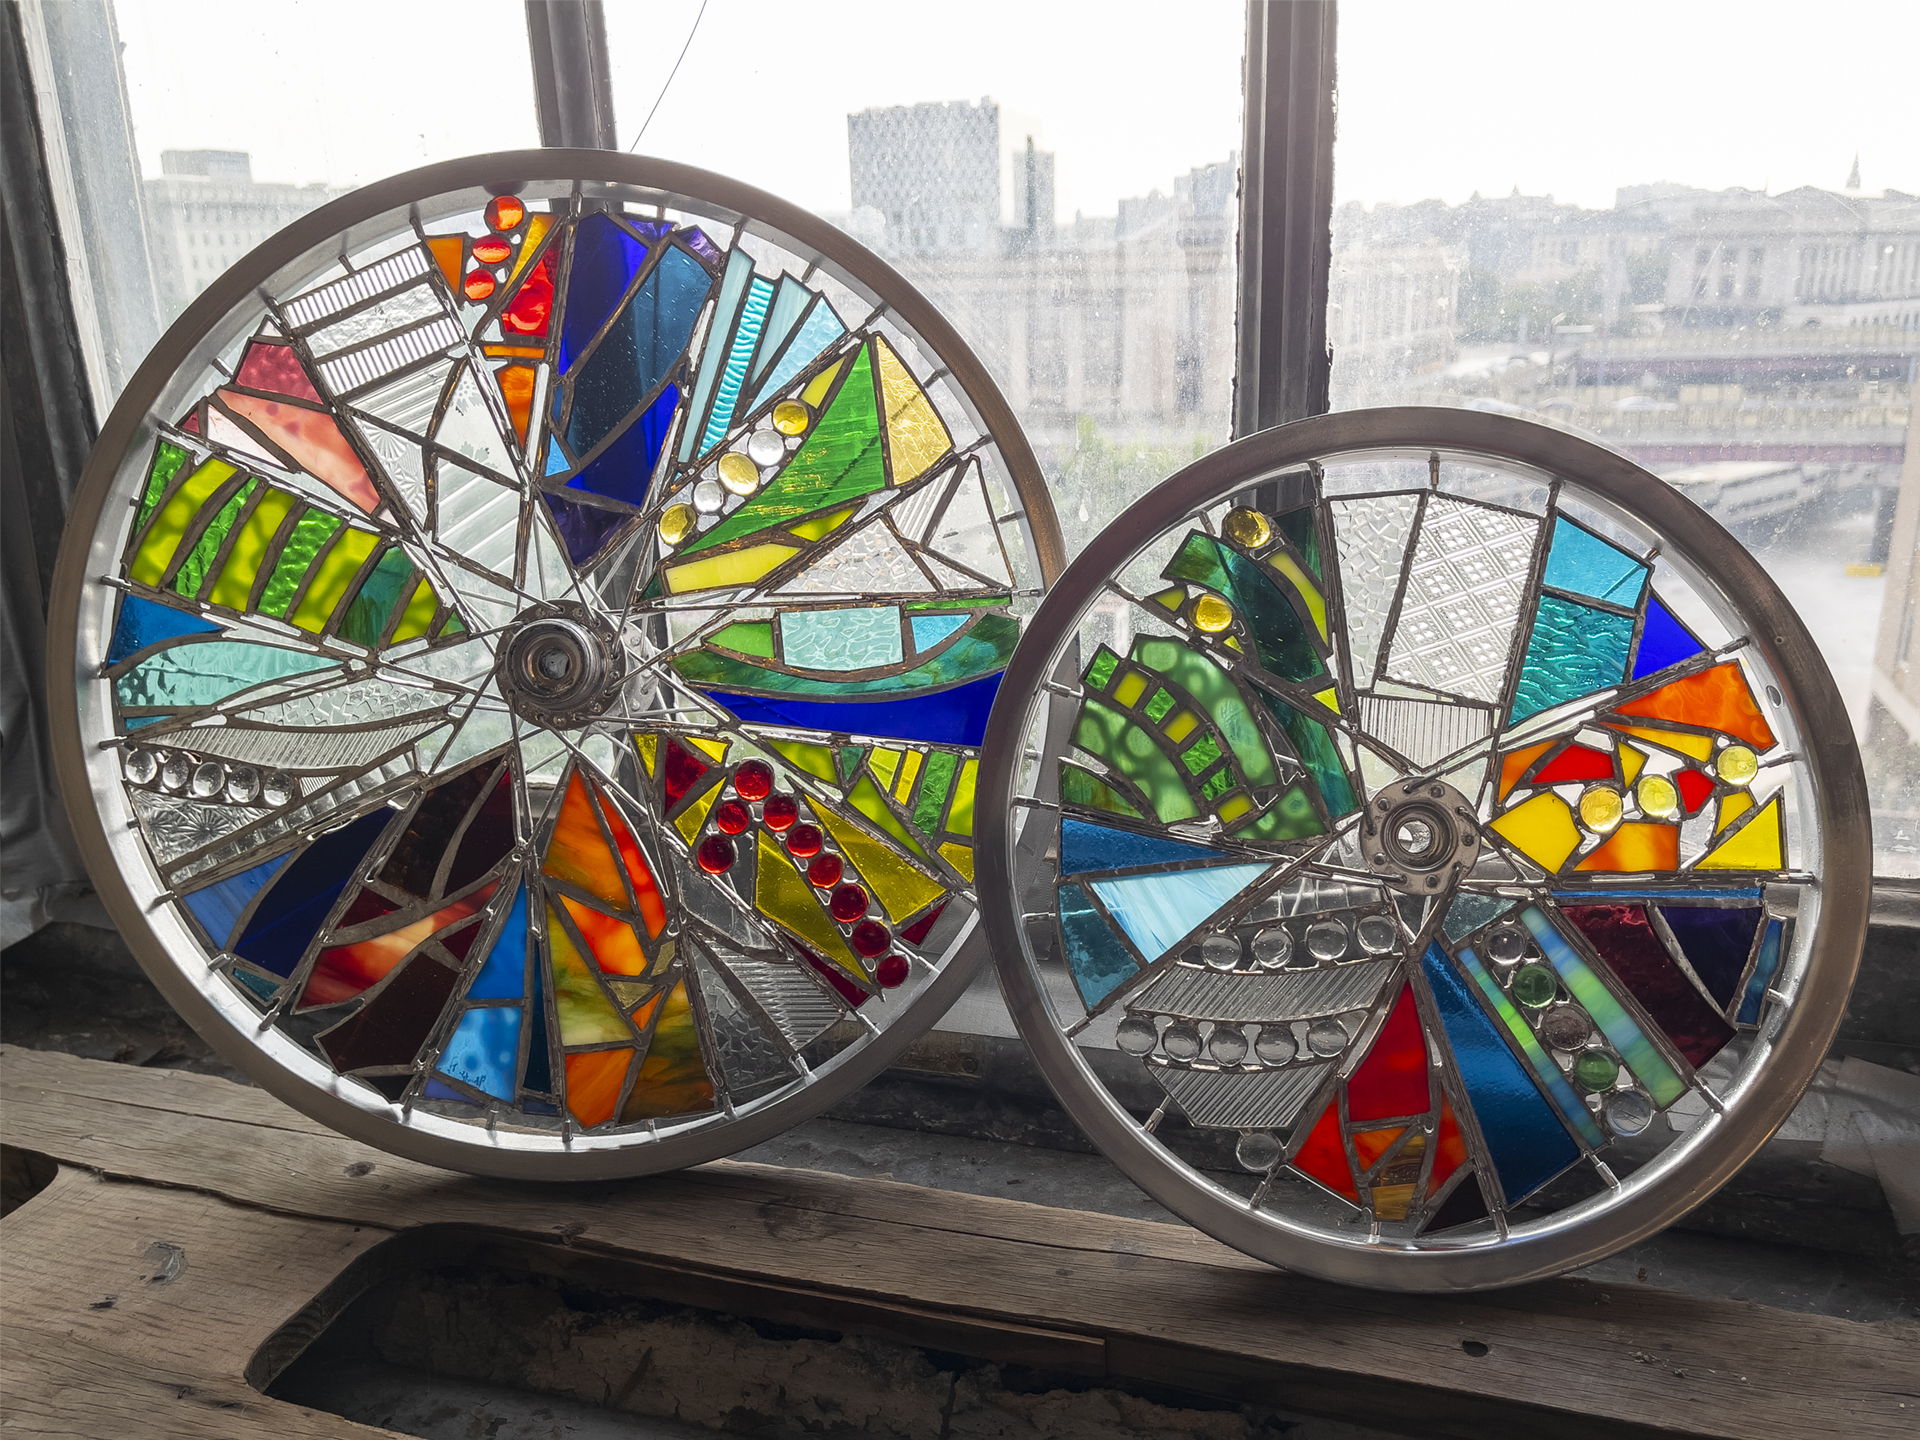 2 smaller abstract glass art wheels